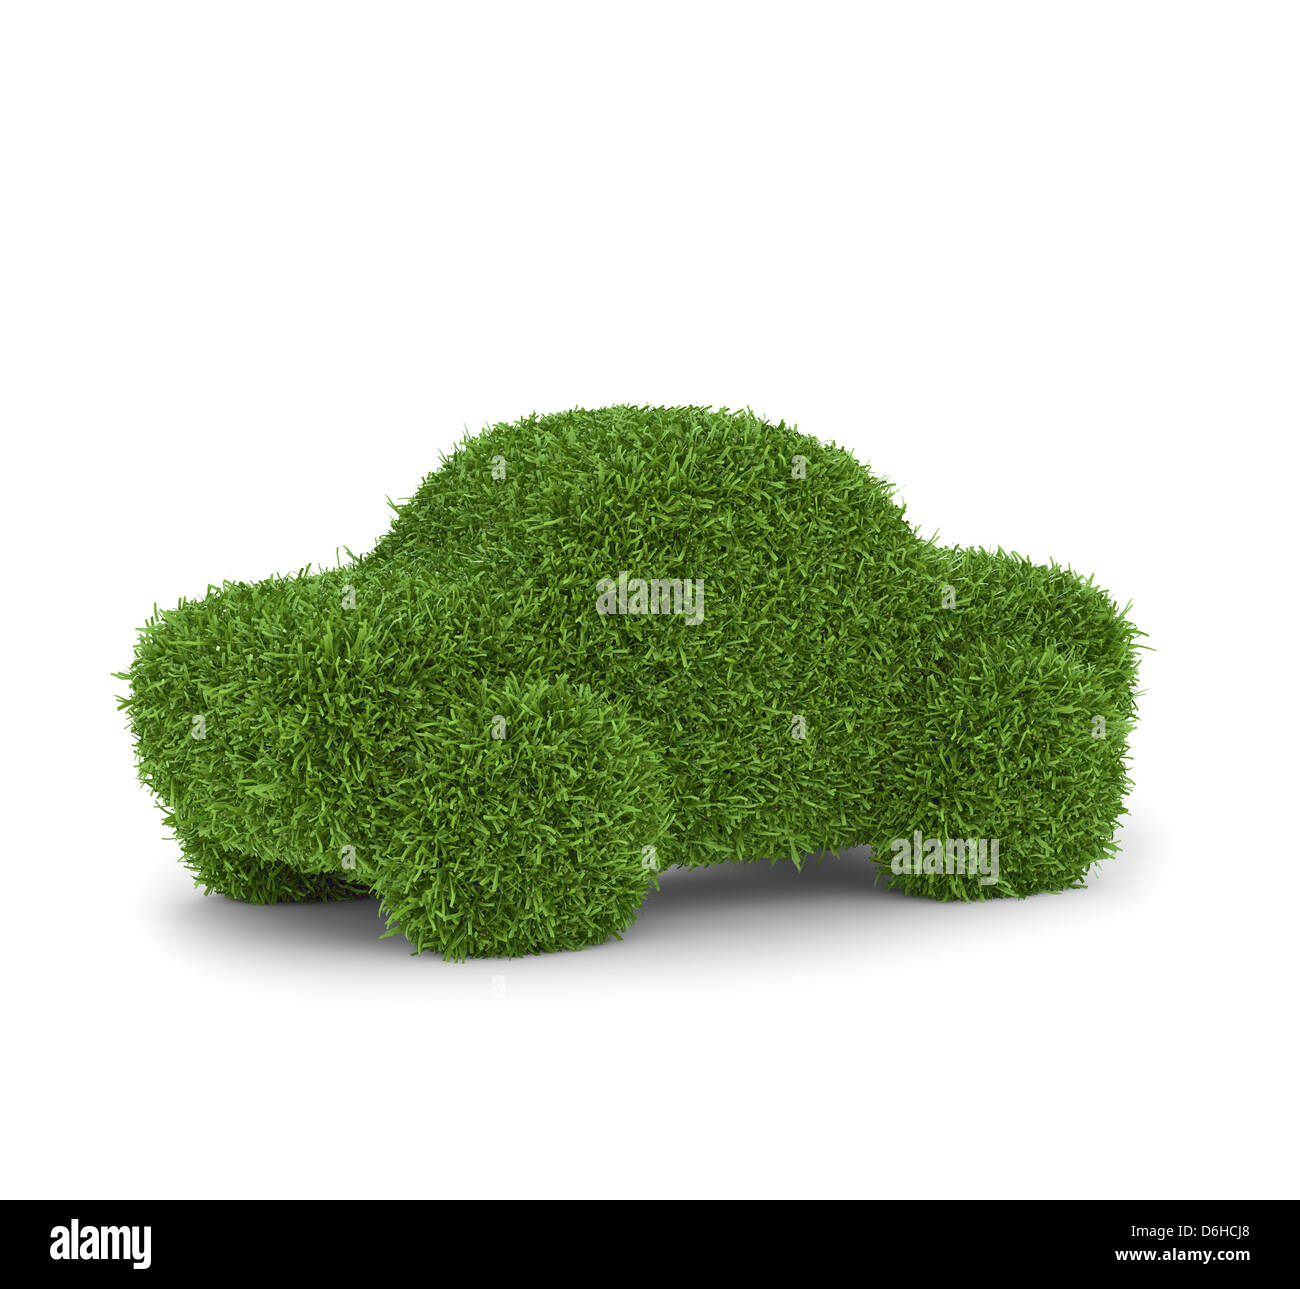 Green car, conceptual artwork Stock Photo